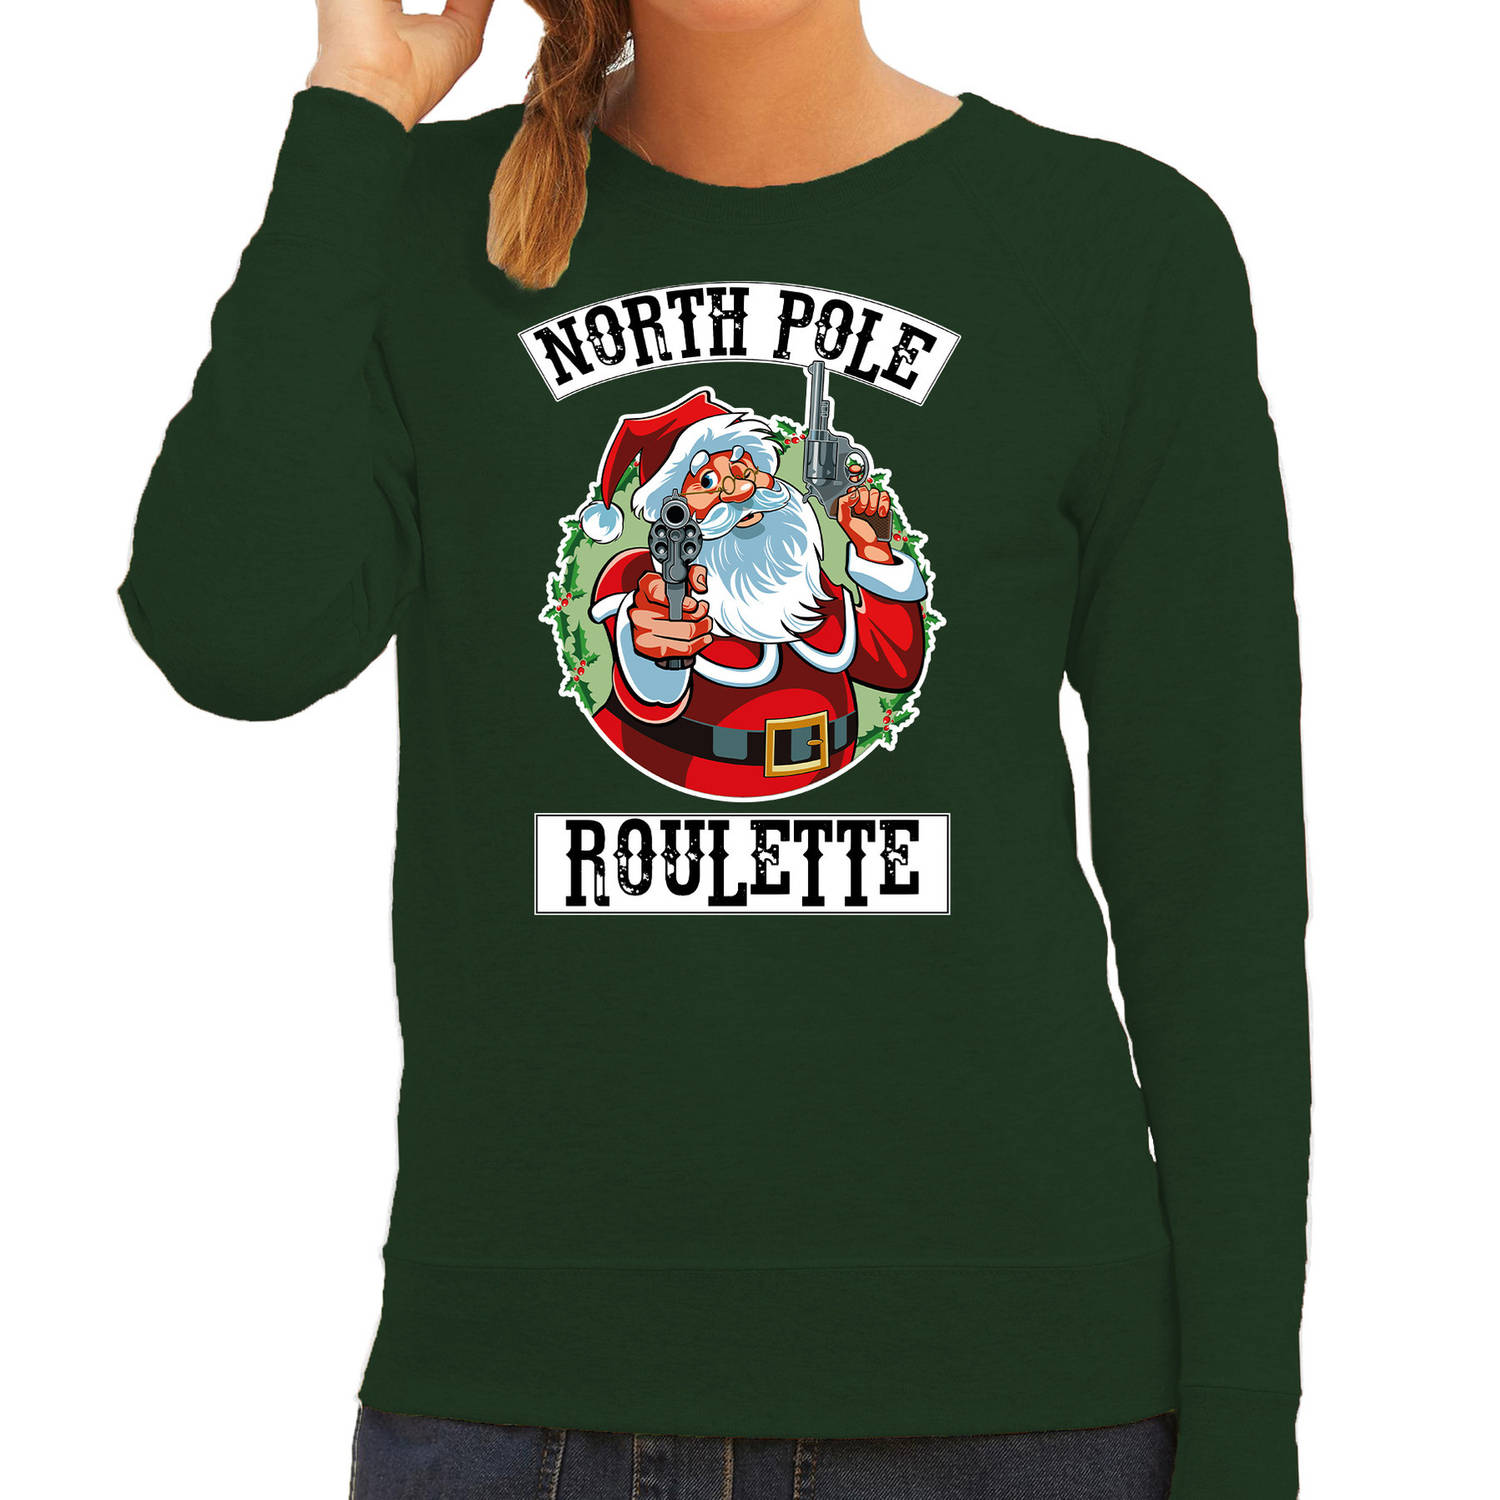 Groene Kersttrui / Kerstkleding Northpole roulette voor dames S - kerst truien